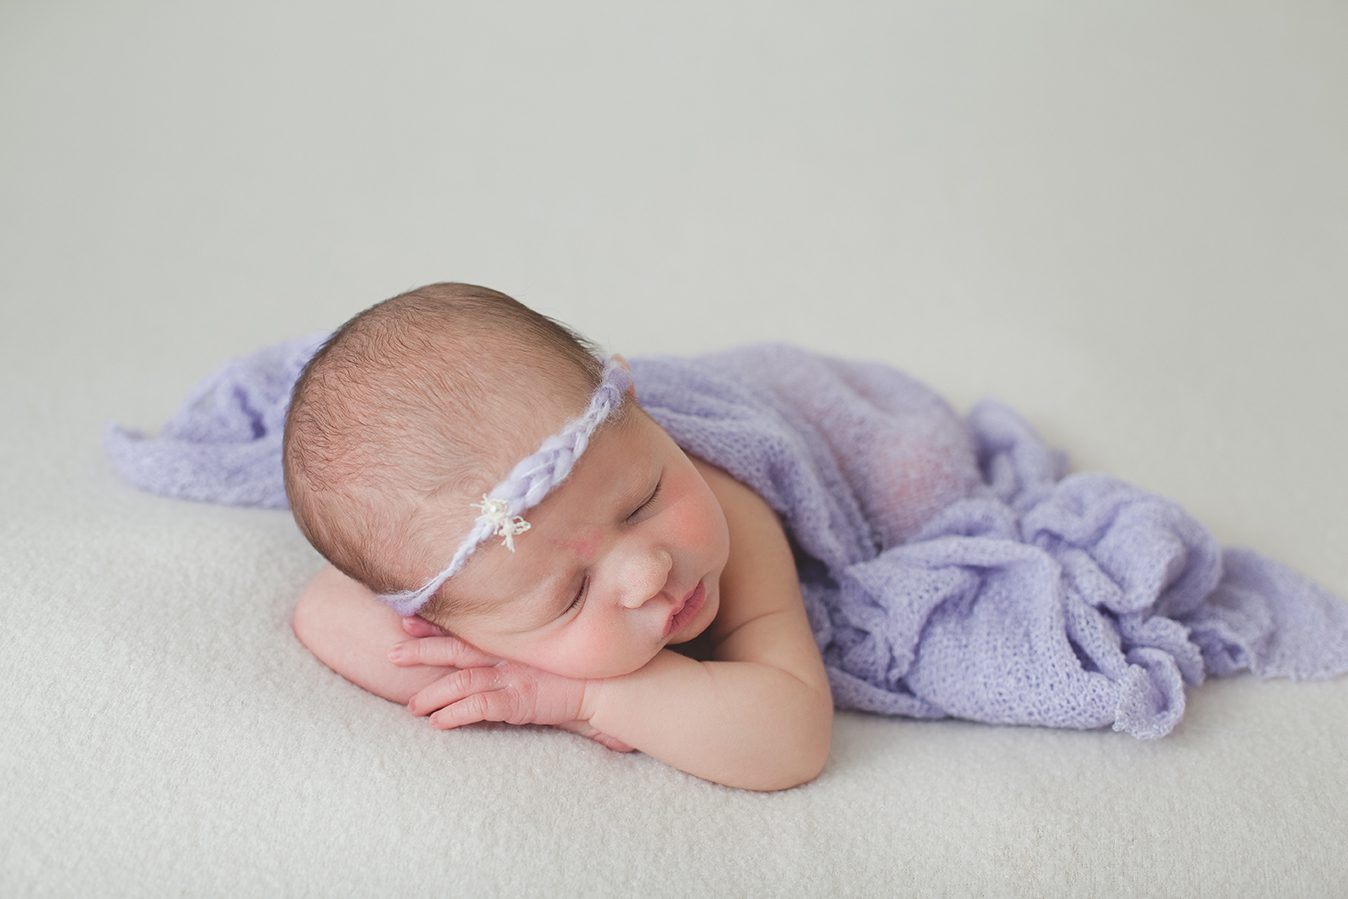 edmonton newborn photography of little girl in purple